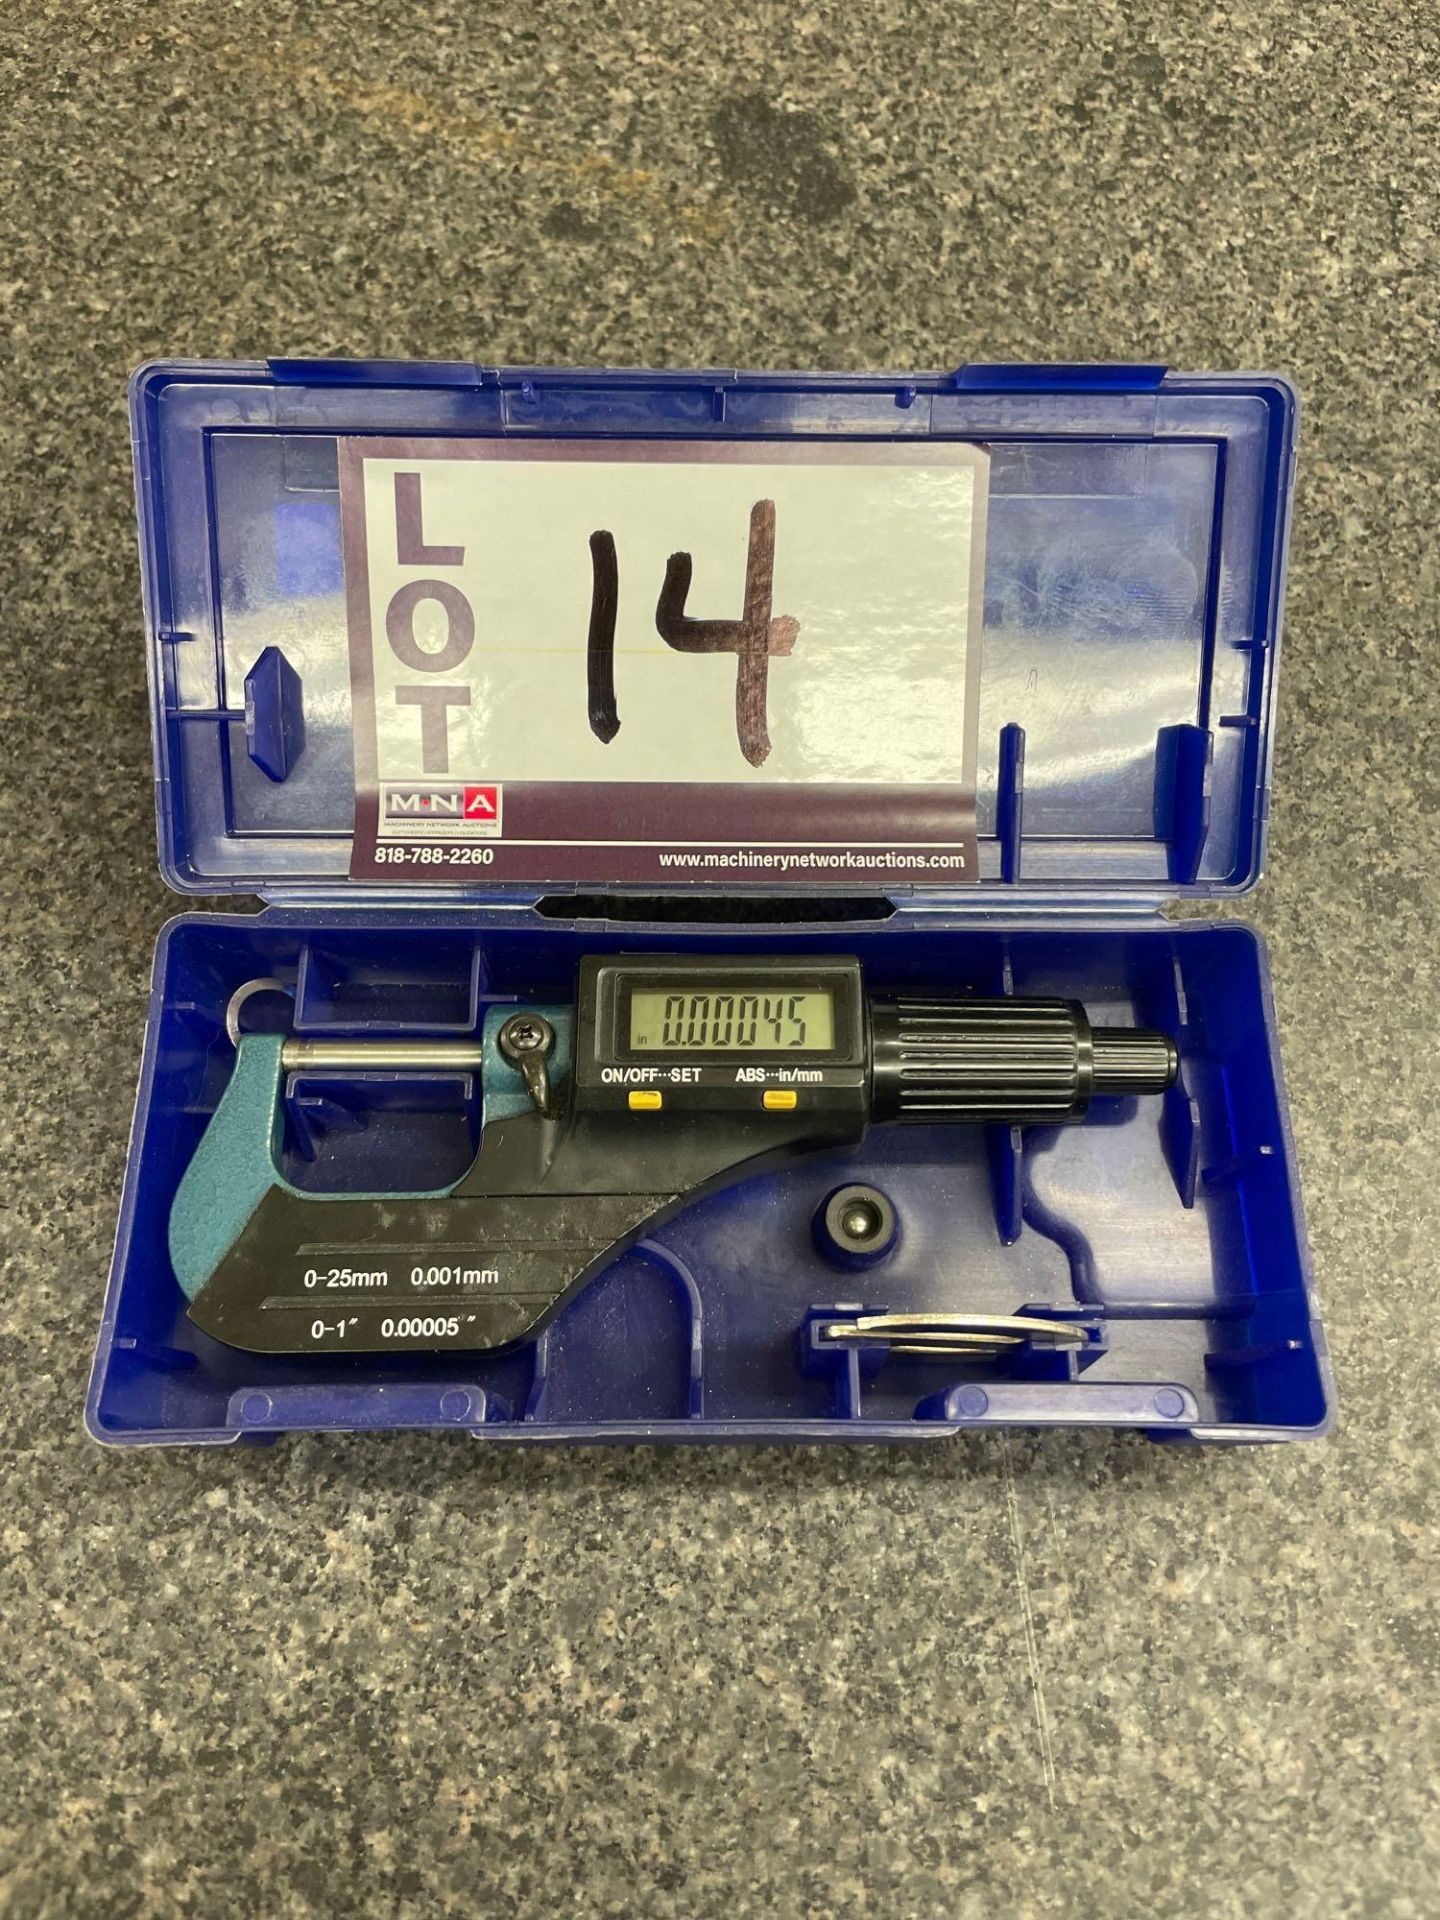 0 - 1" Digital Micrometer